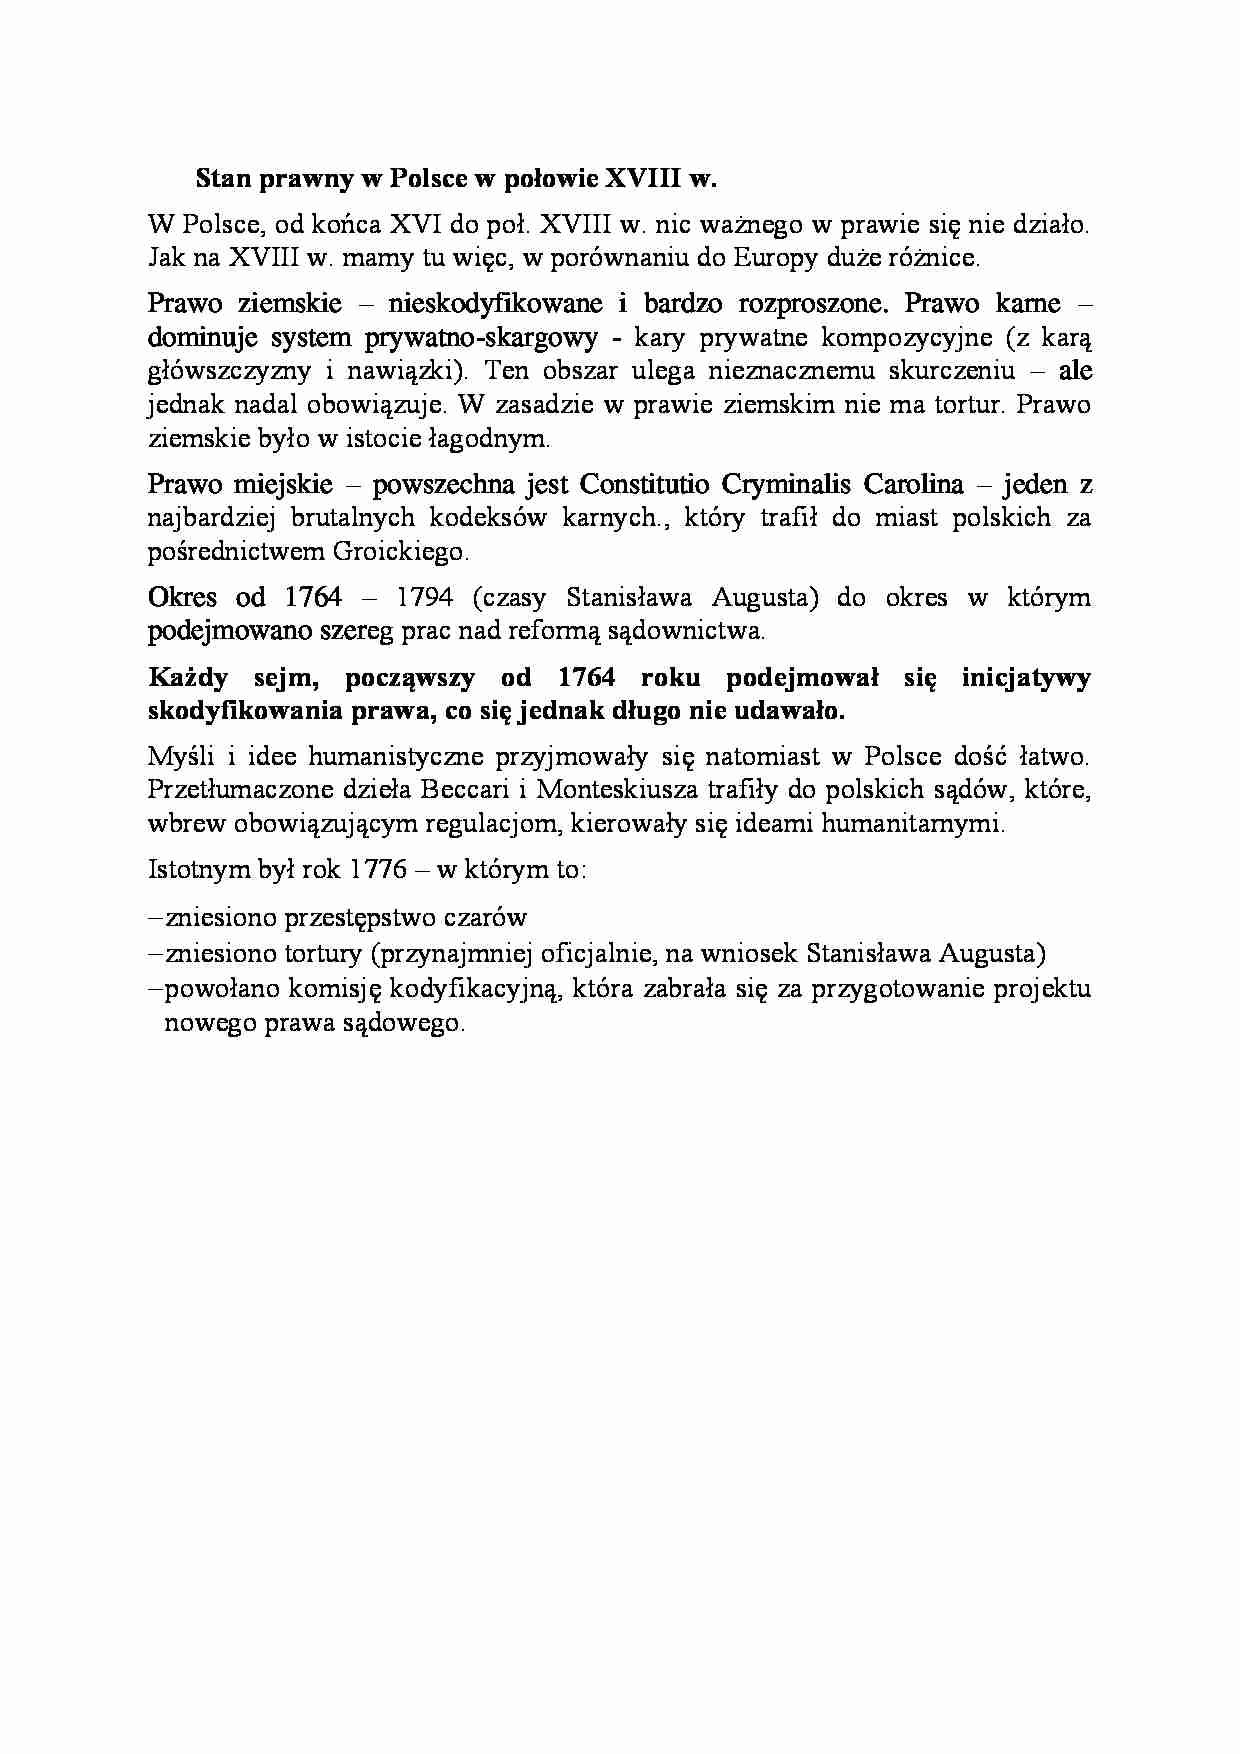 Stan prawny w Polsce w połowie XVIII w-opracowanie - strona 1